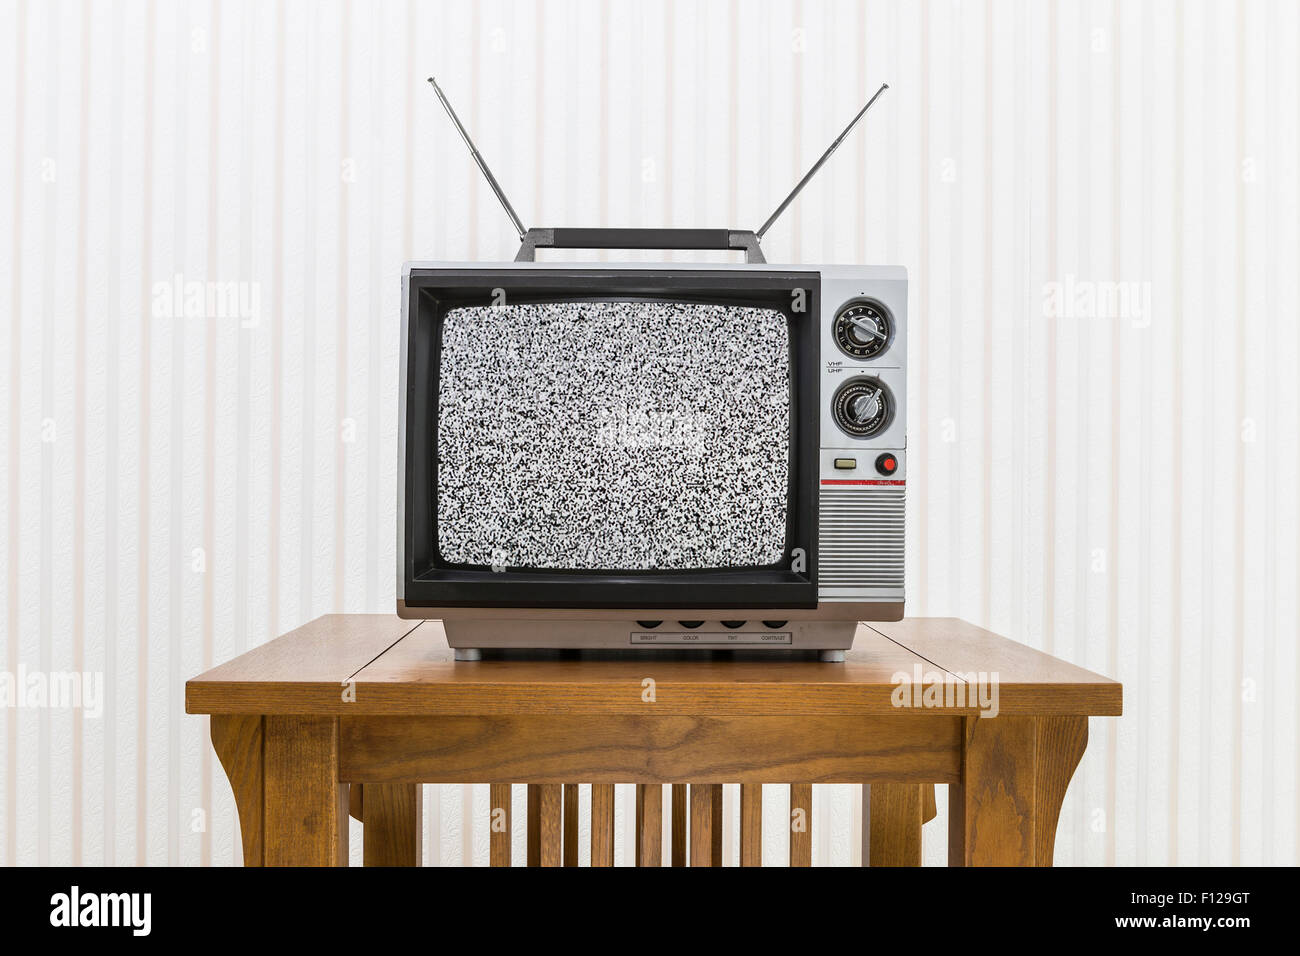 Vieille télévision portative avec antenne sur table en bois avec écran  statique Photo Stock - Alamy